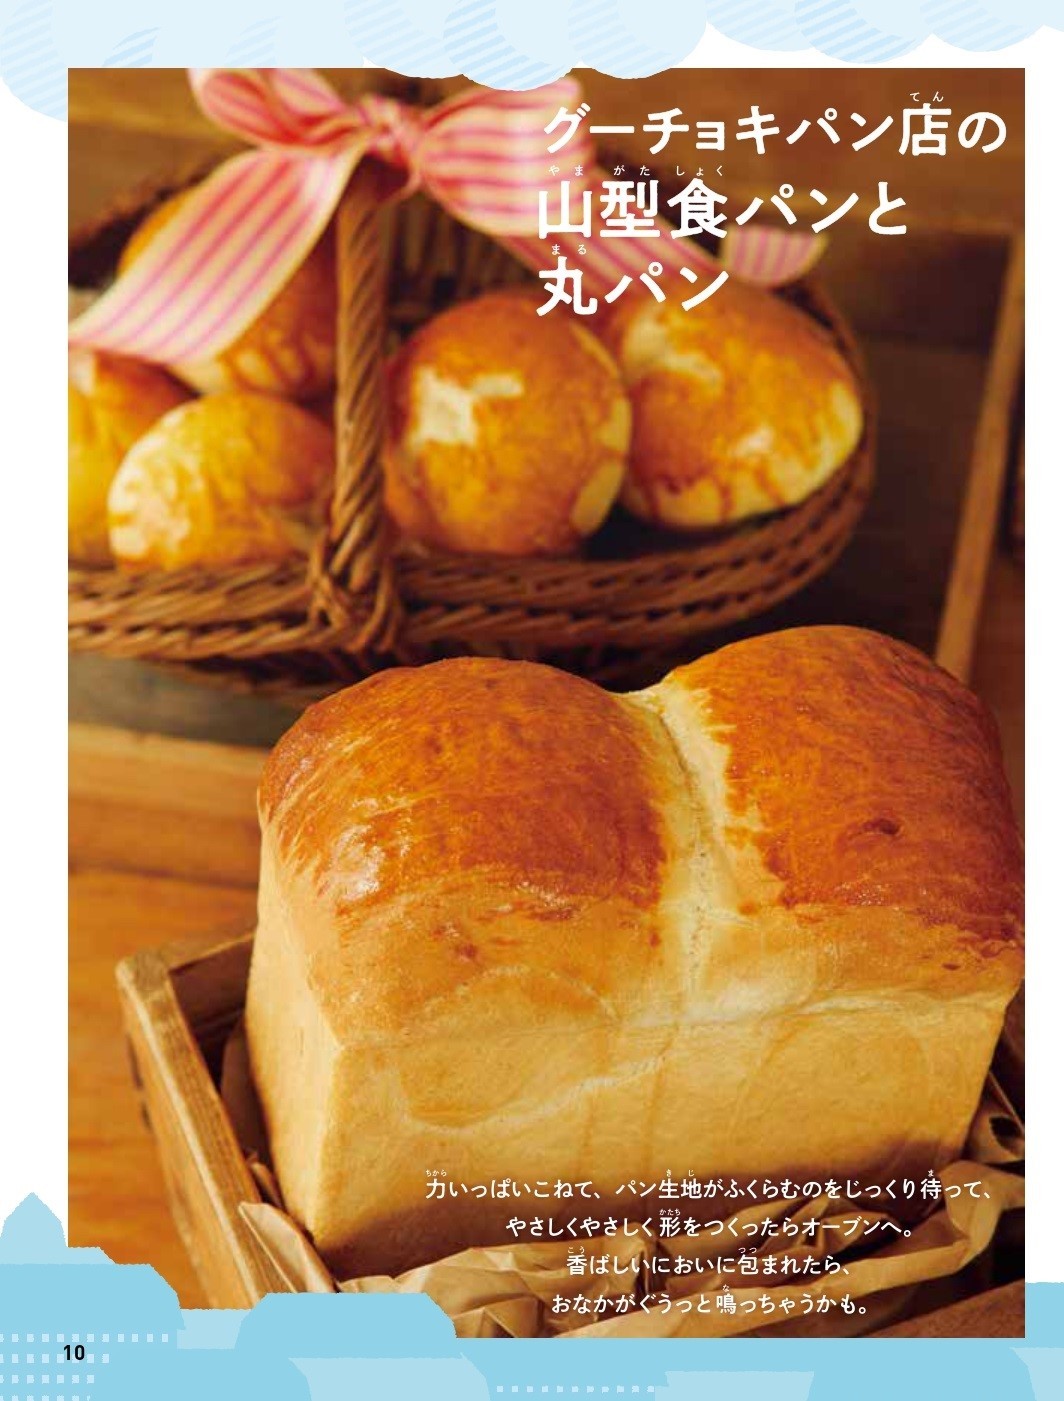 グーチョキパン店の山型食パンと丸パン